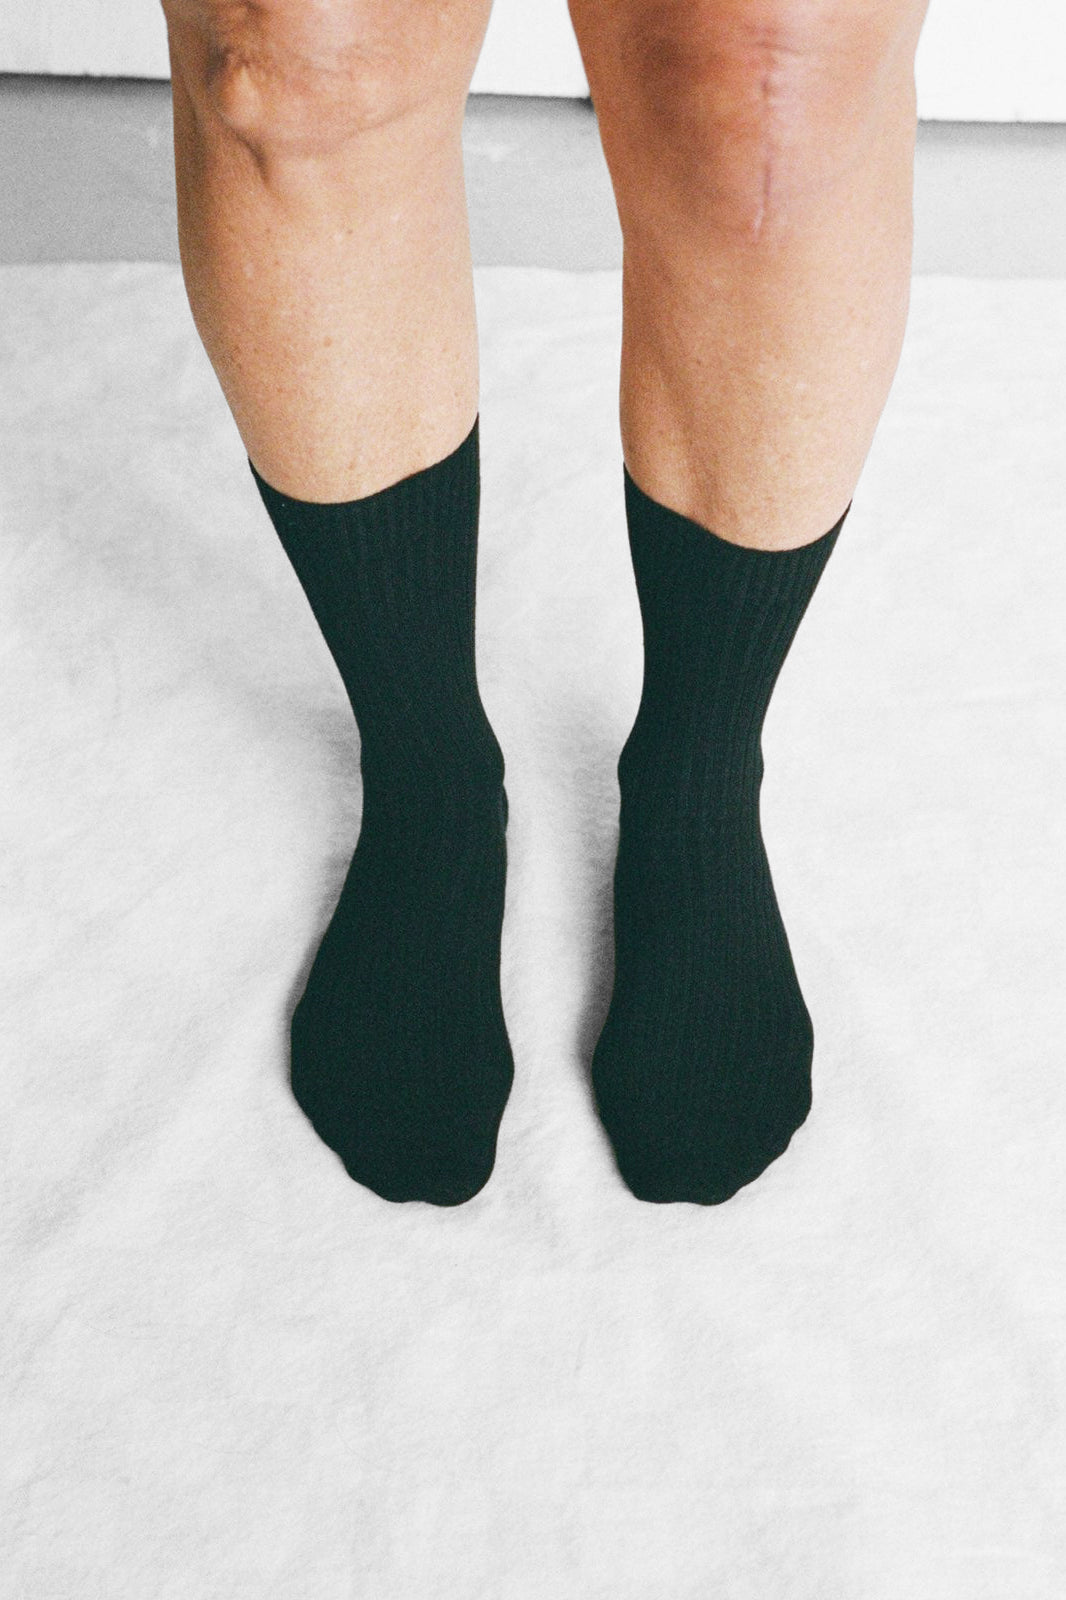 Rib Overankle Socks in Black by Baserange